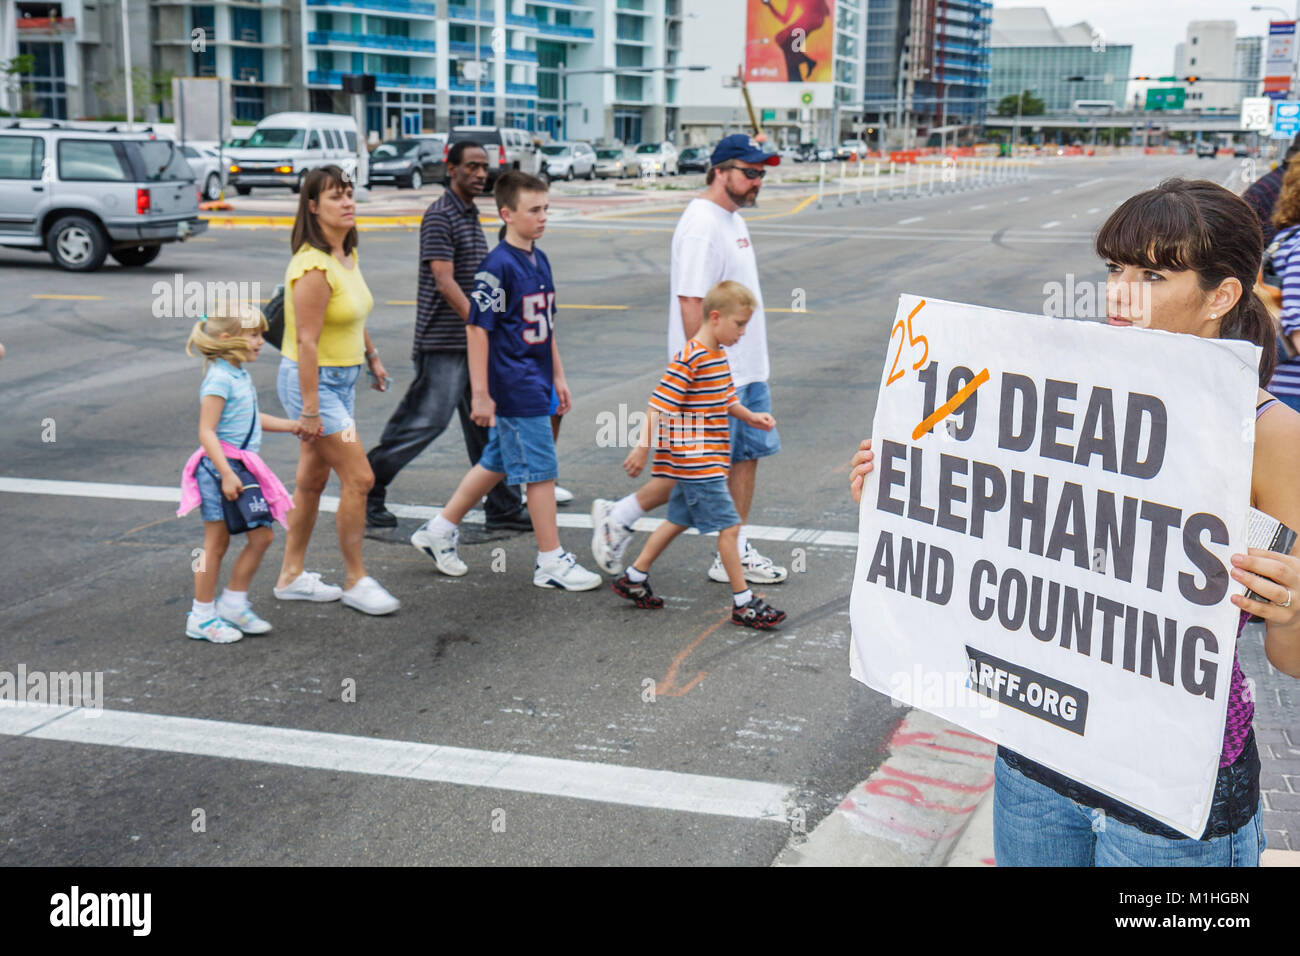 Miami Florida,Biscayne Boulevard,American Airlines Arena,manifestation d'abus d'éléphant,droits des animaux,femmes femmes,affiches,panneaux,familles parents Banque D'Images